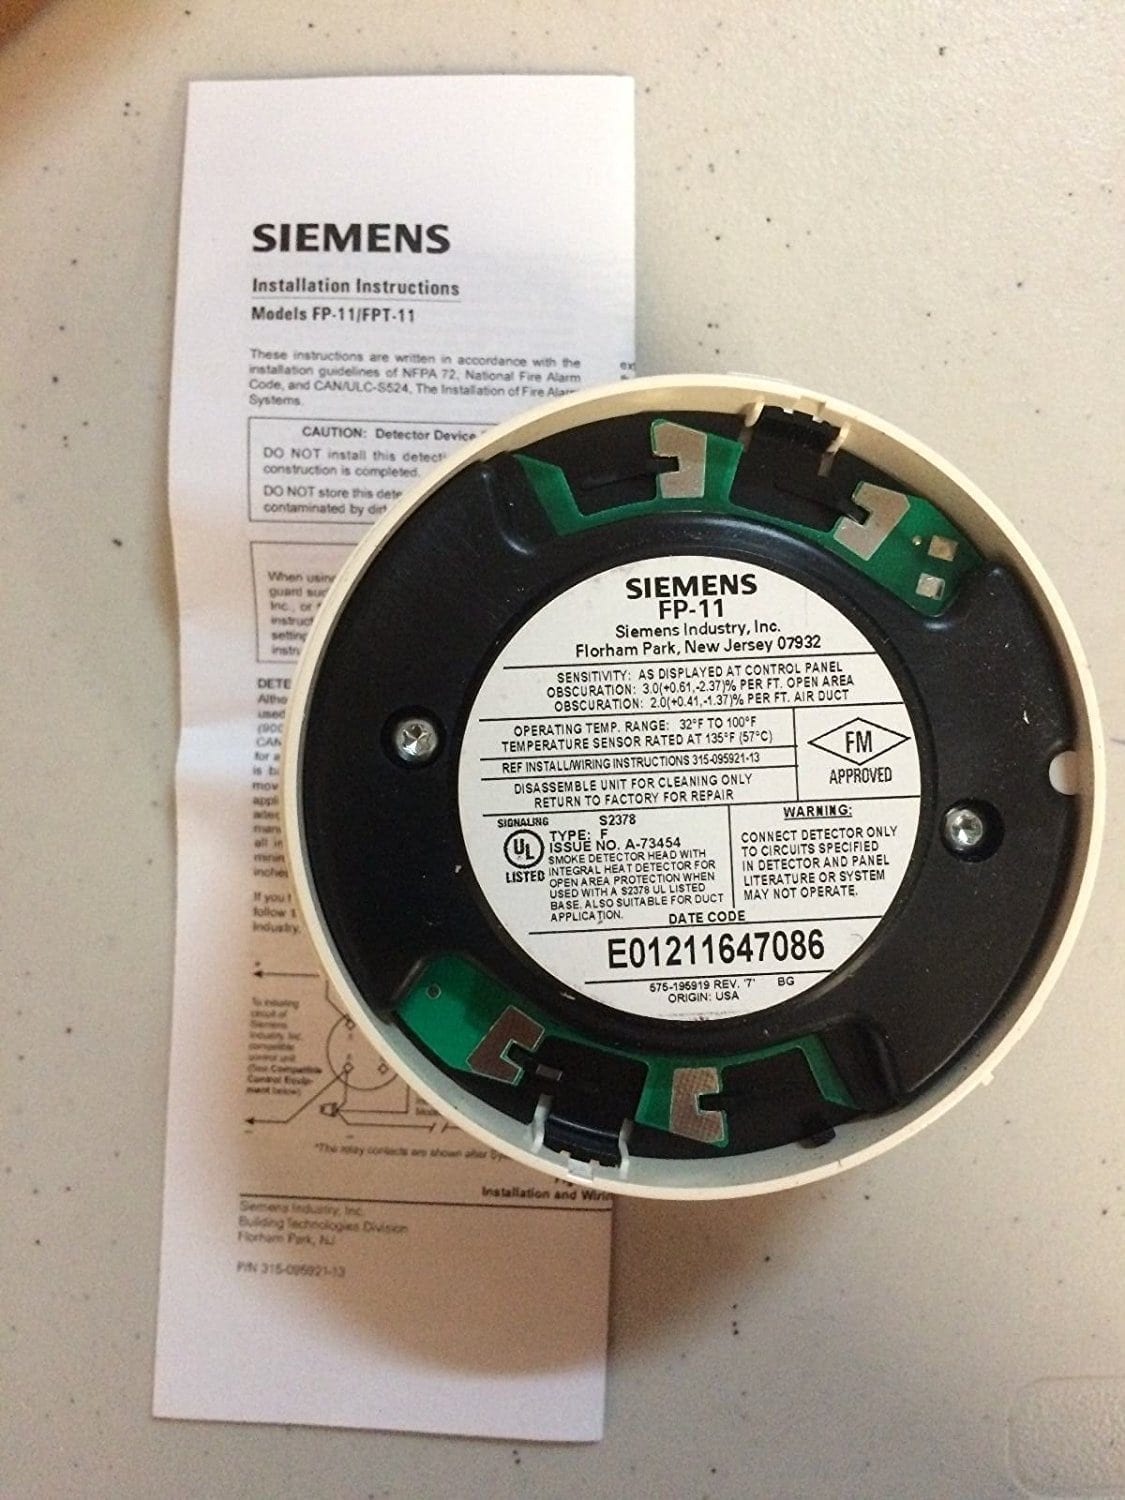 HFP-11 SiemensAddressable Fire Print Fire DetectorSame Day Shipping 